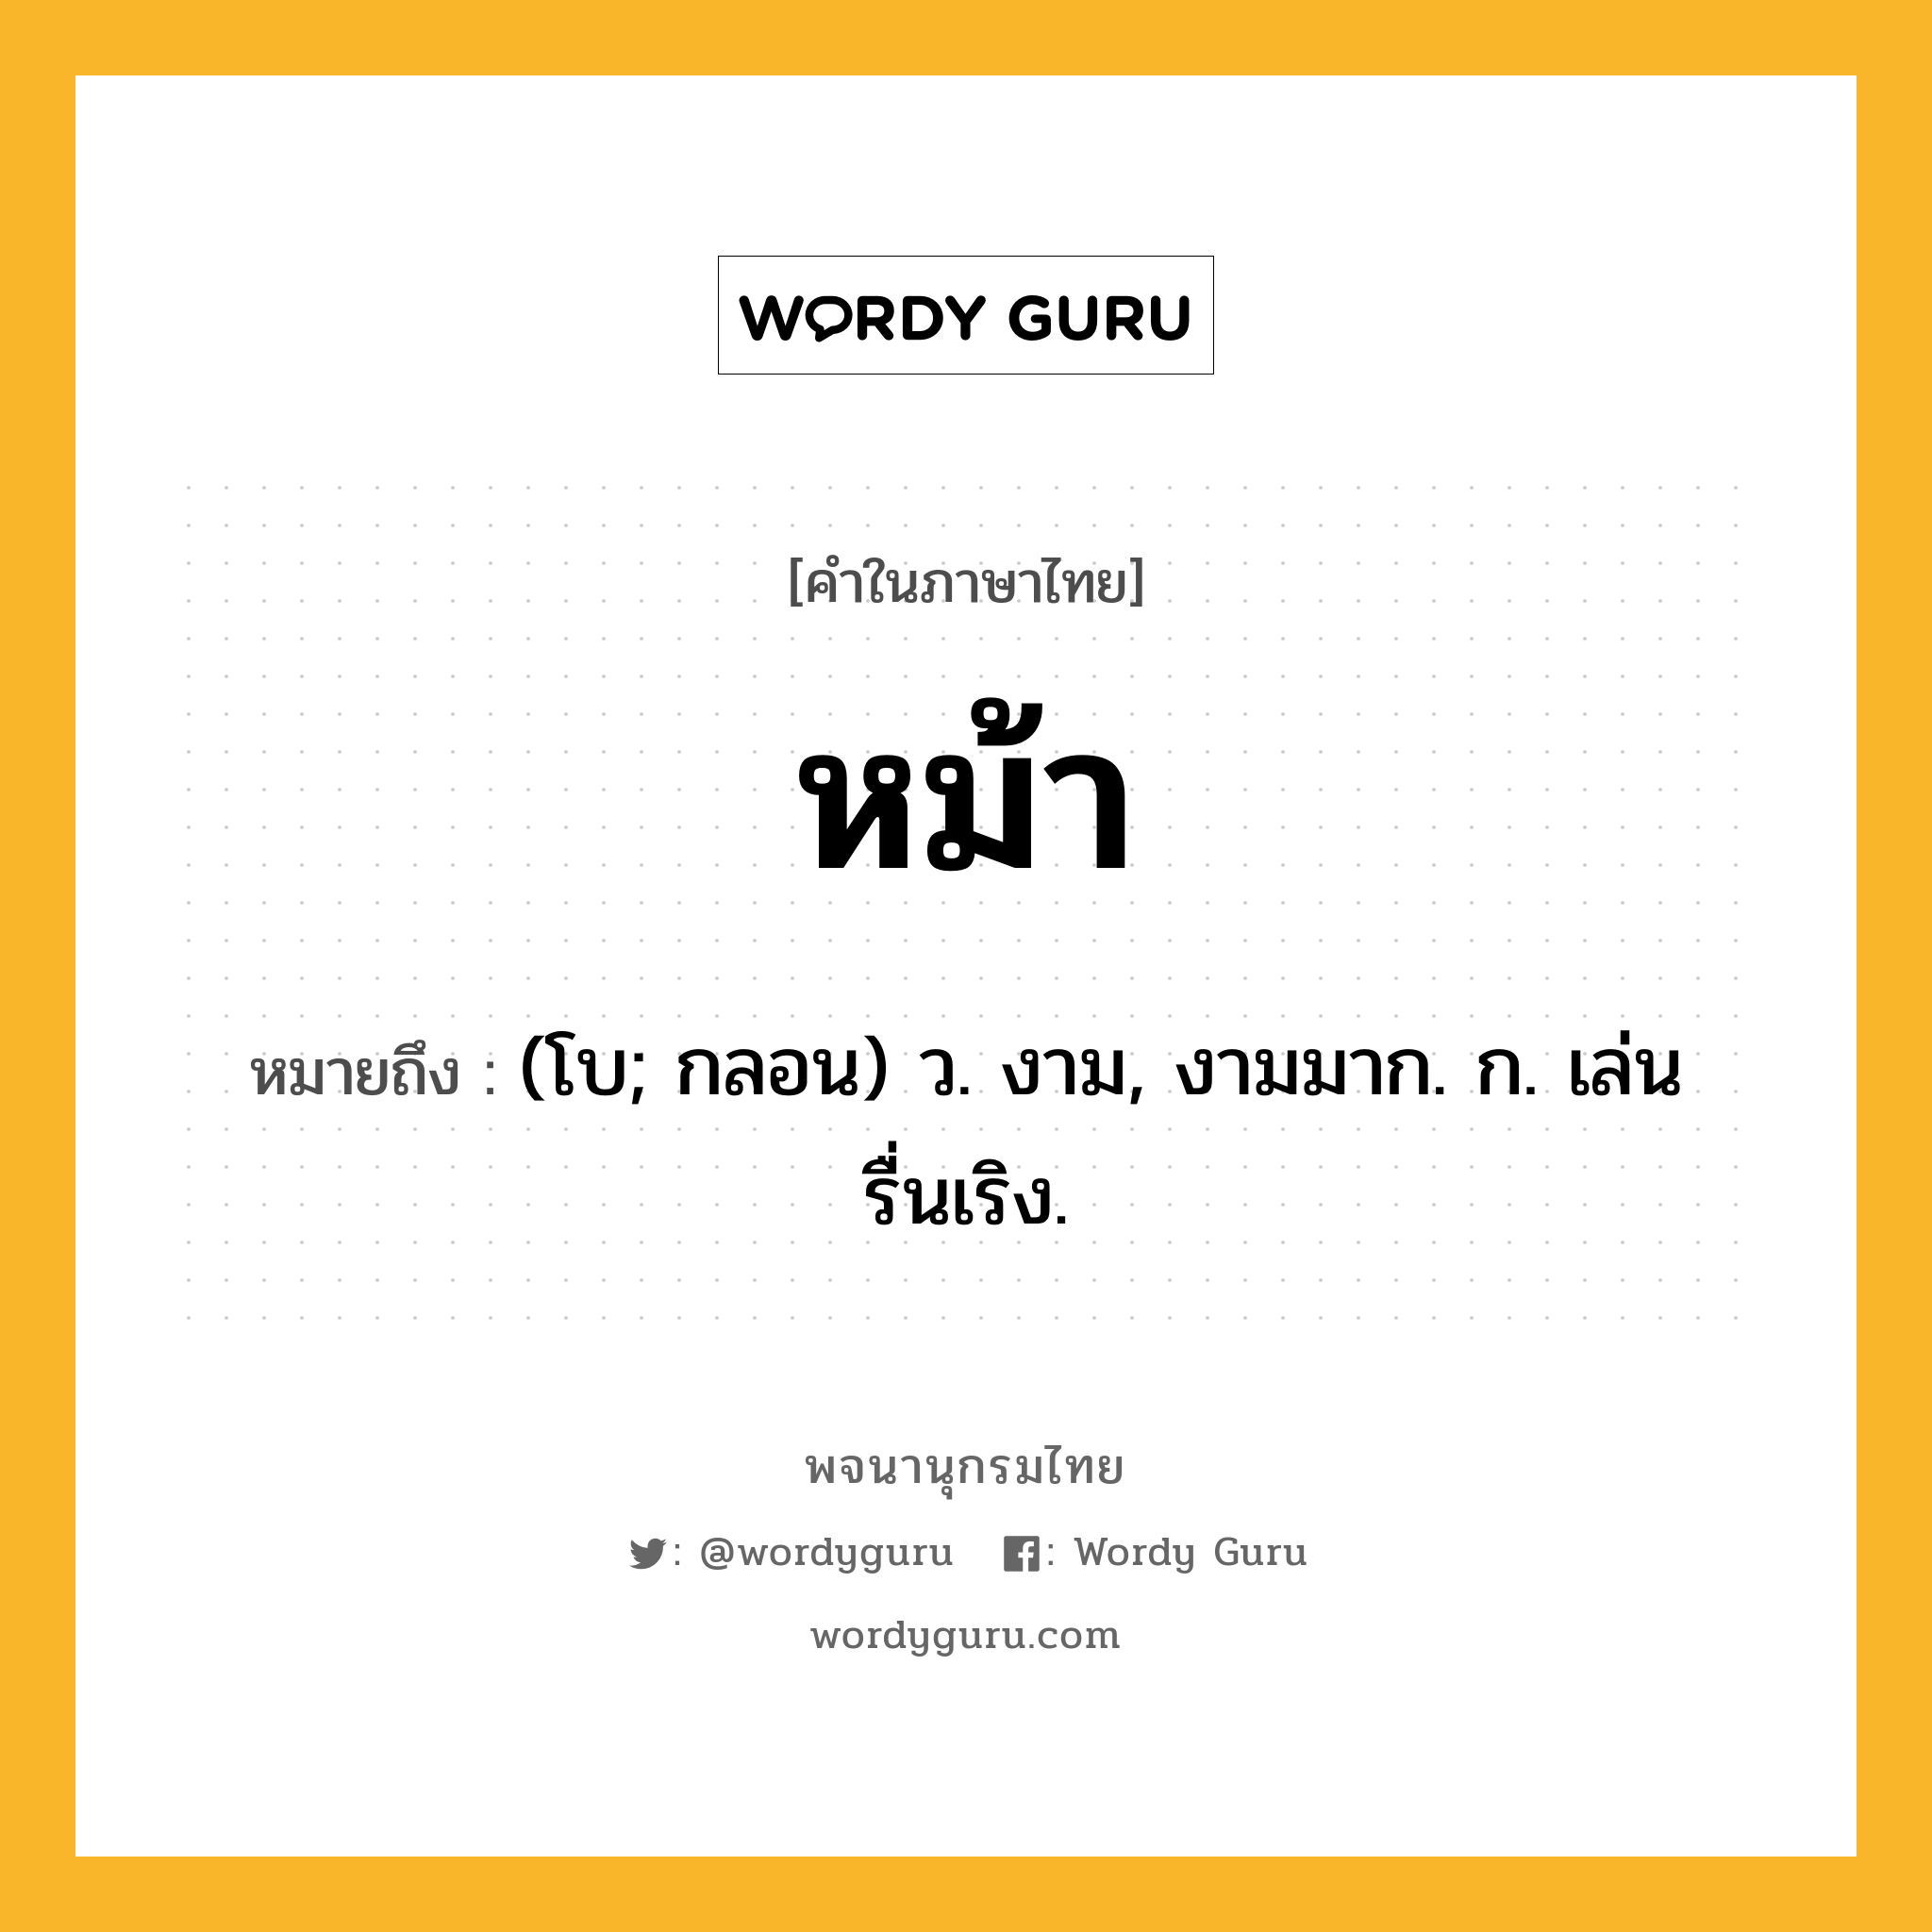 หม้า ความหมาย หมายถึงอะไร?, คำในภาษาไทย หม้า หมายถึง (โบ; กลอน) ว. งาม, งามมาก. ก. เล่นรื่นเริง.